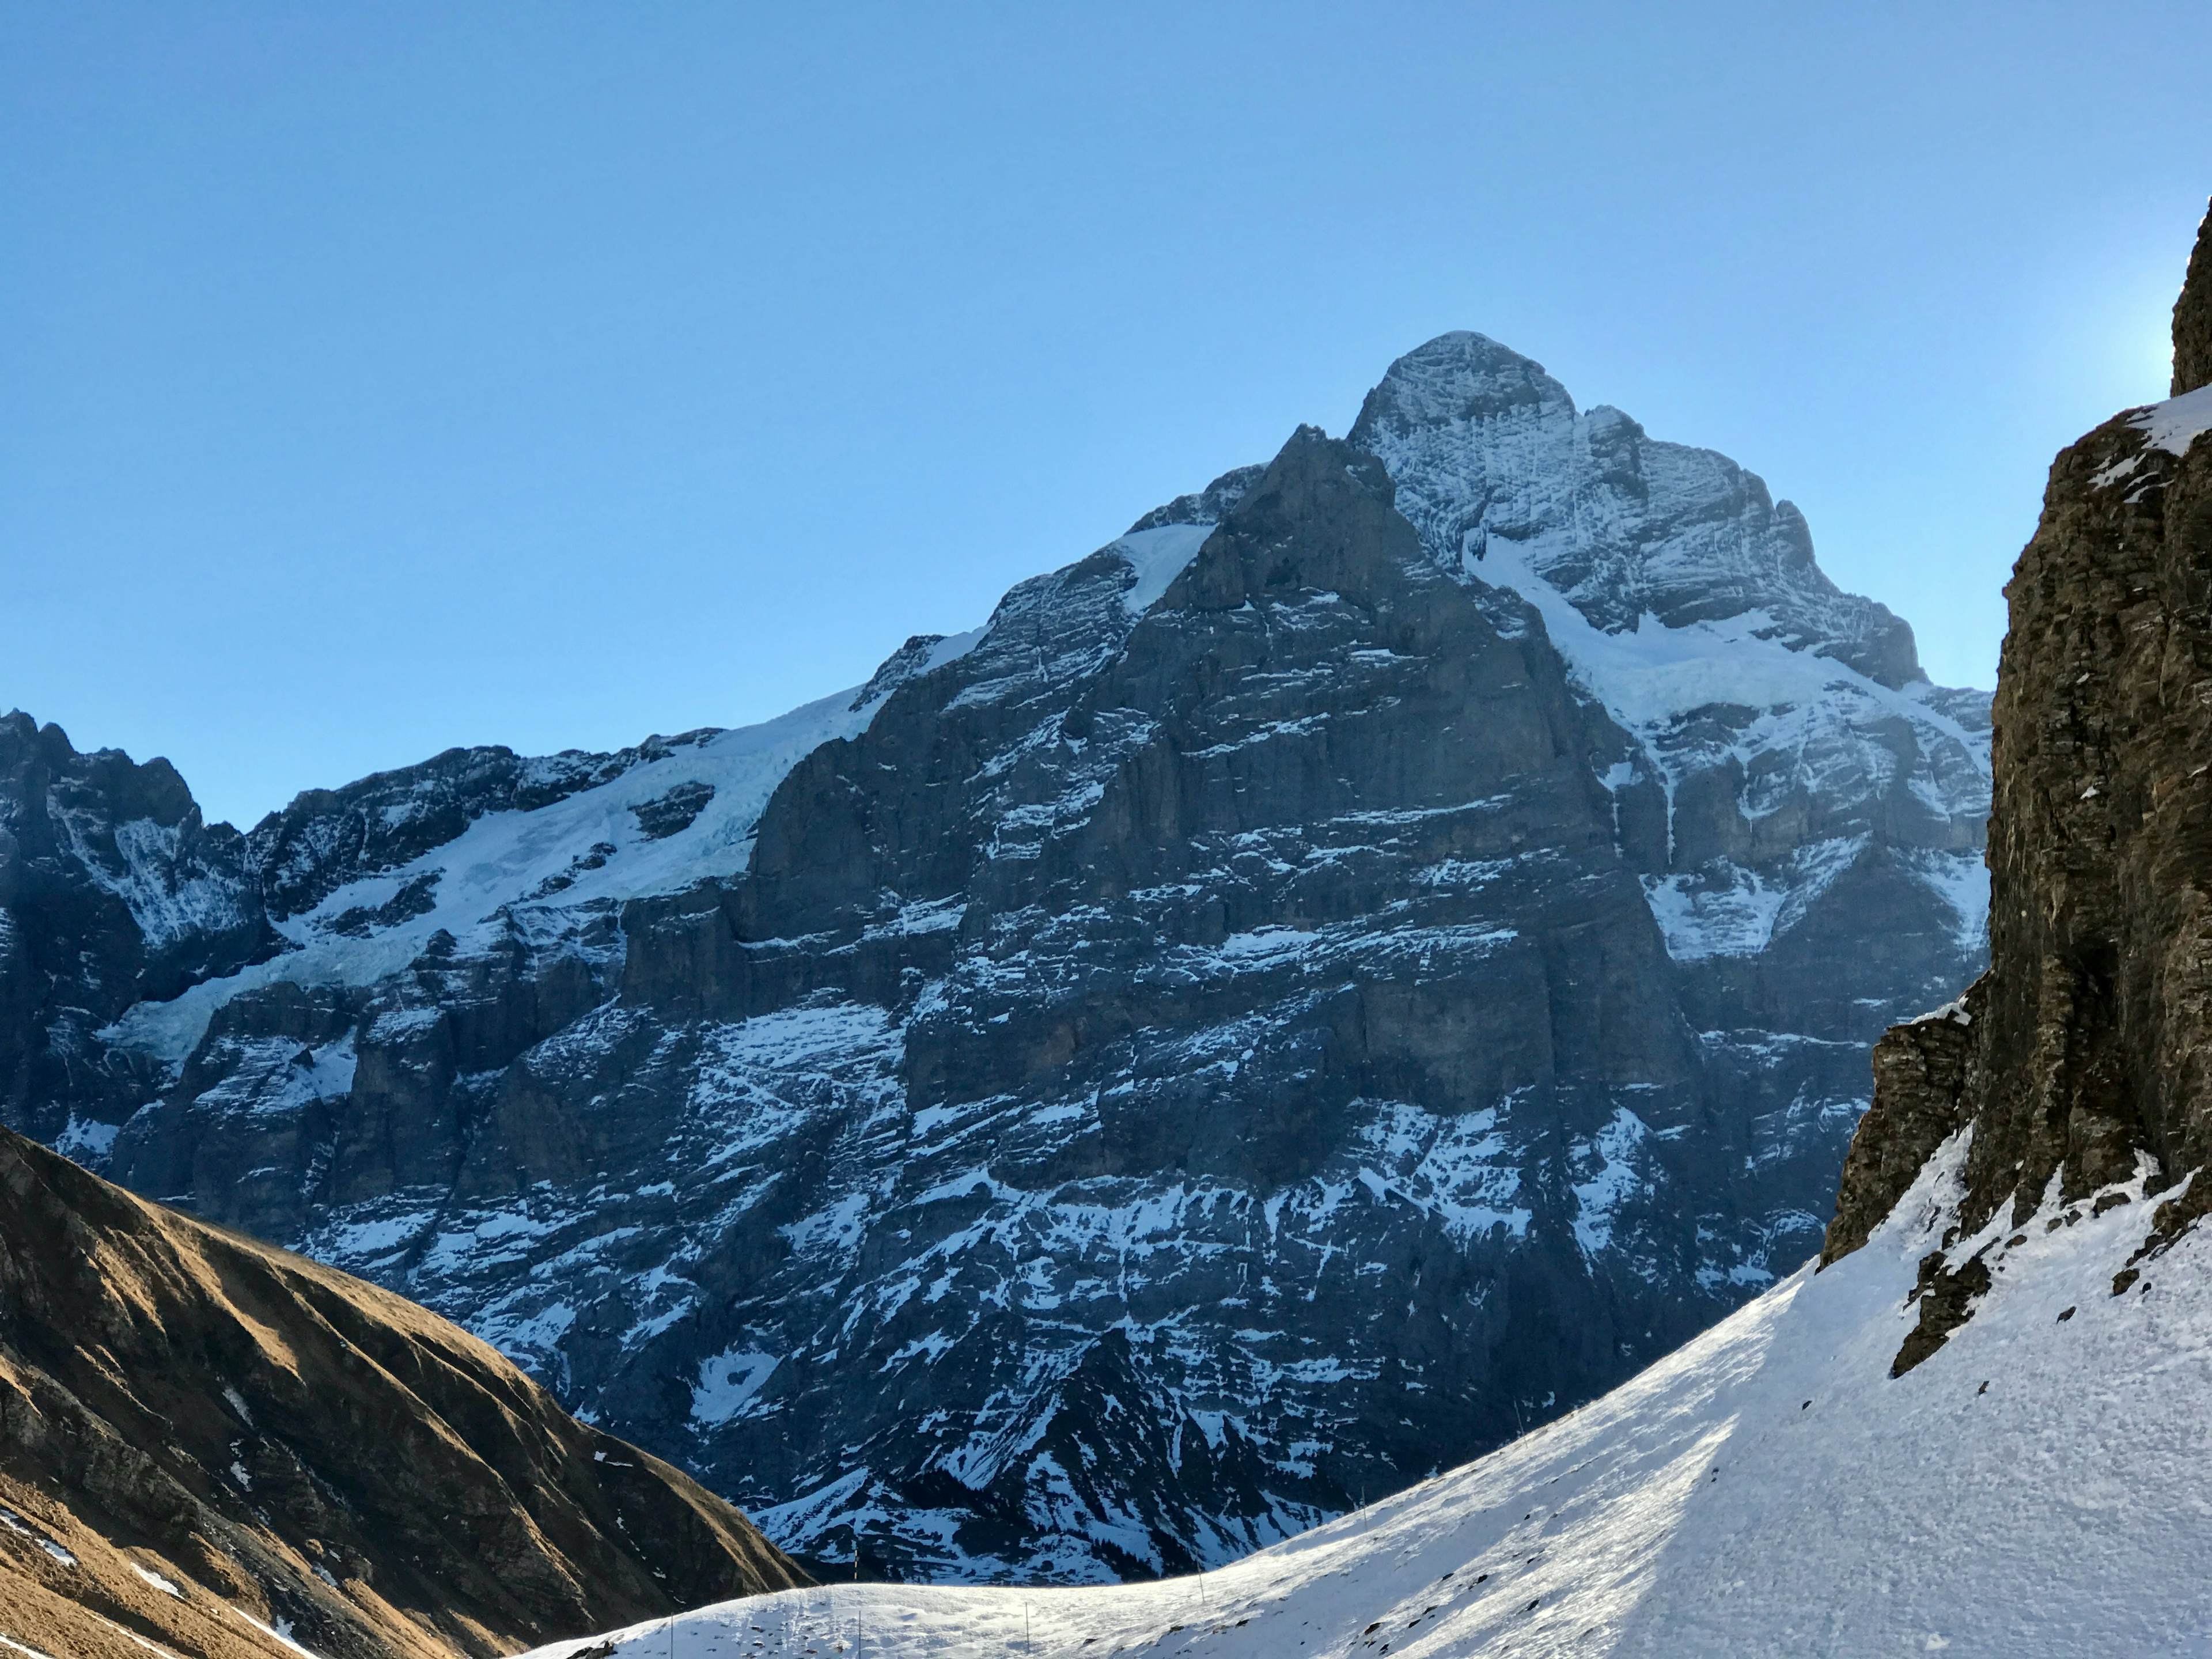 Spektakuläre Ausblicke auf das Wetterhorn und die Nordwand des Scheideggwetterhorns